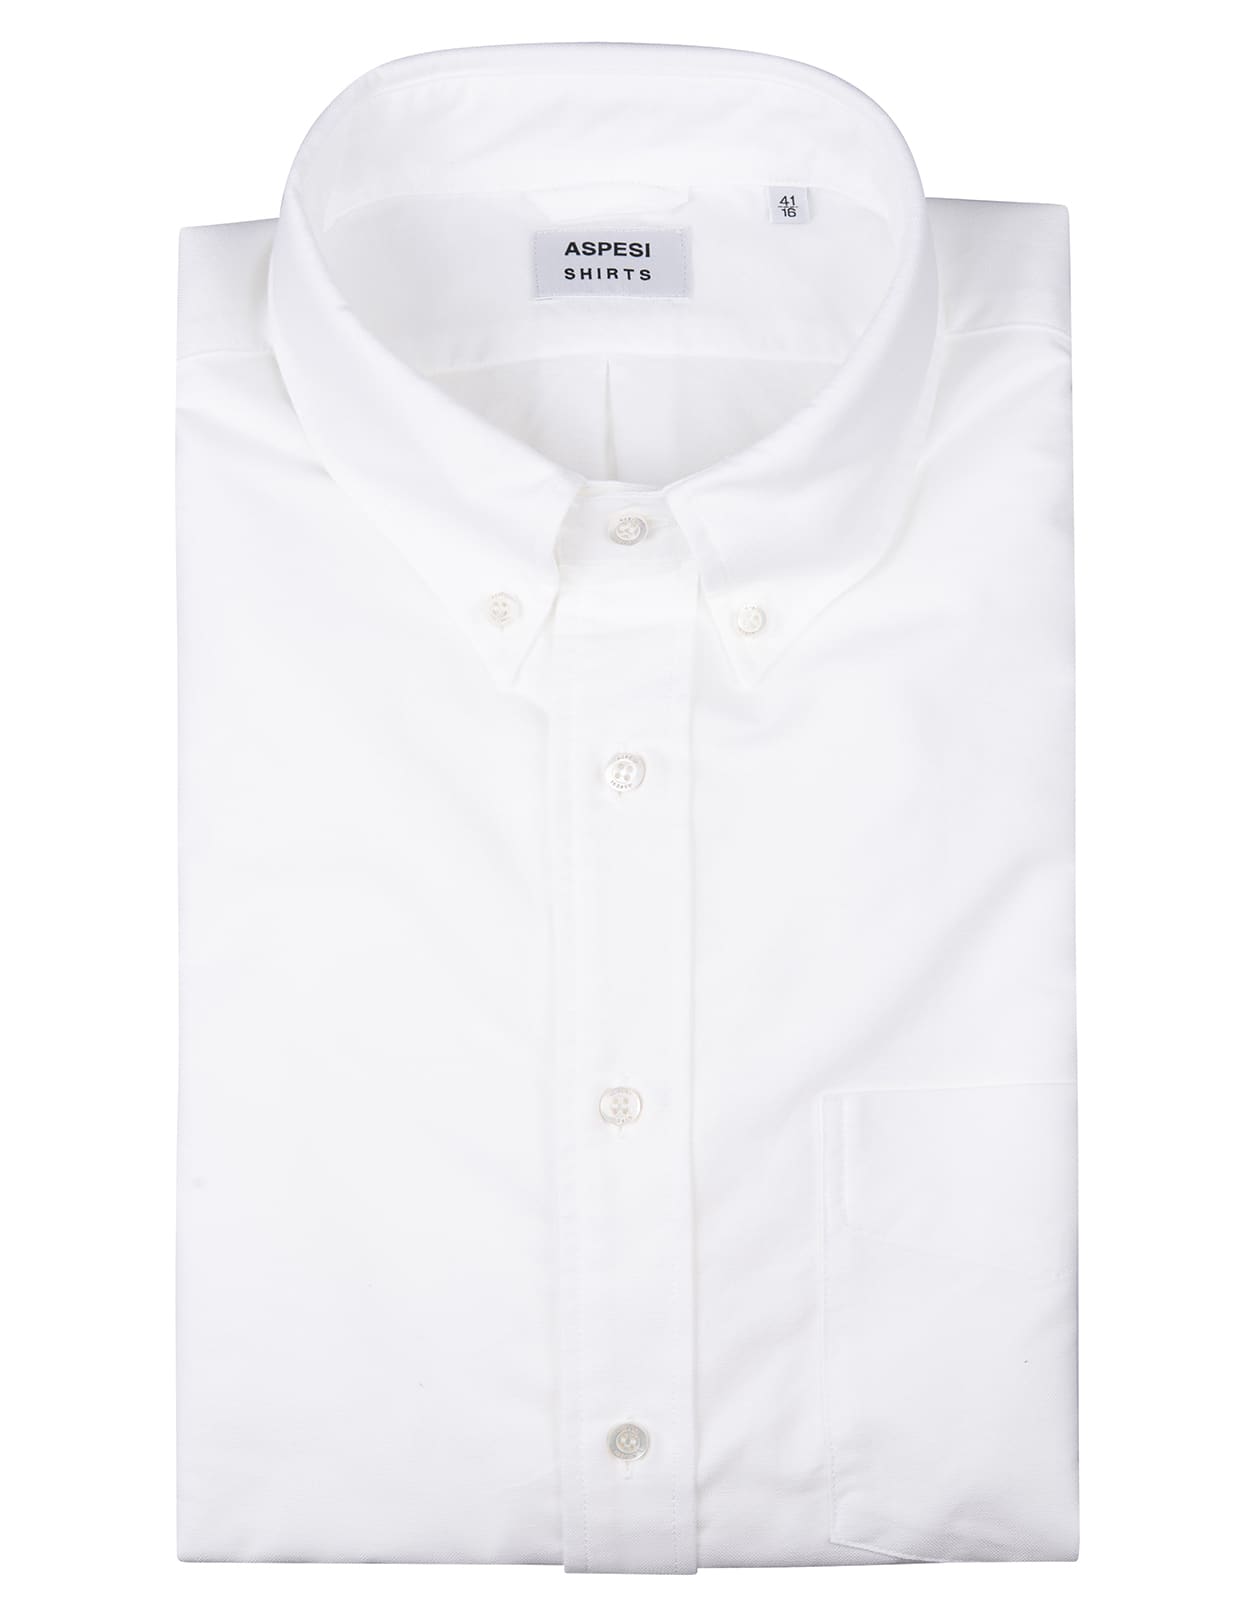 Aspesi Man White Oxford Cotton Shirt